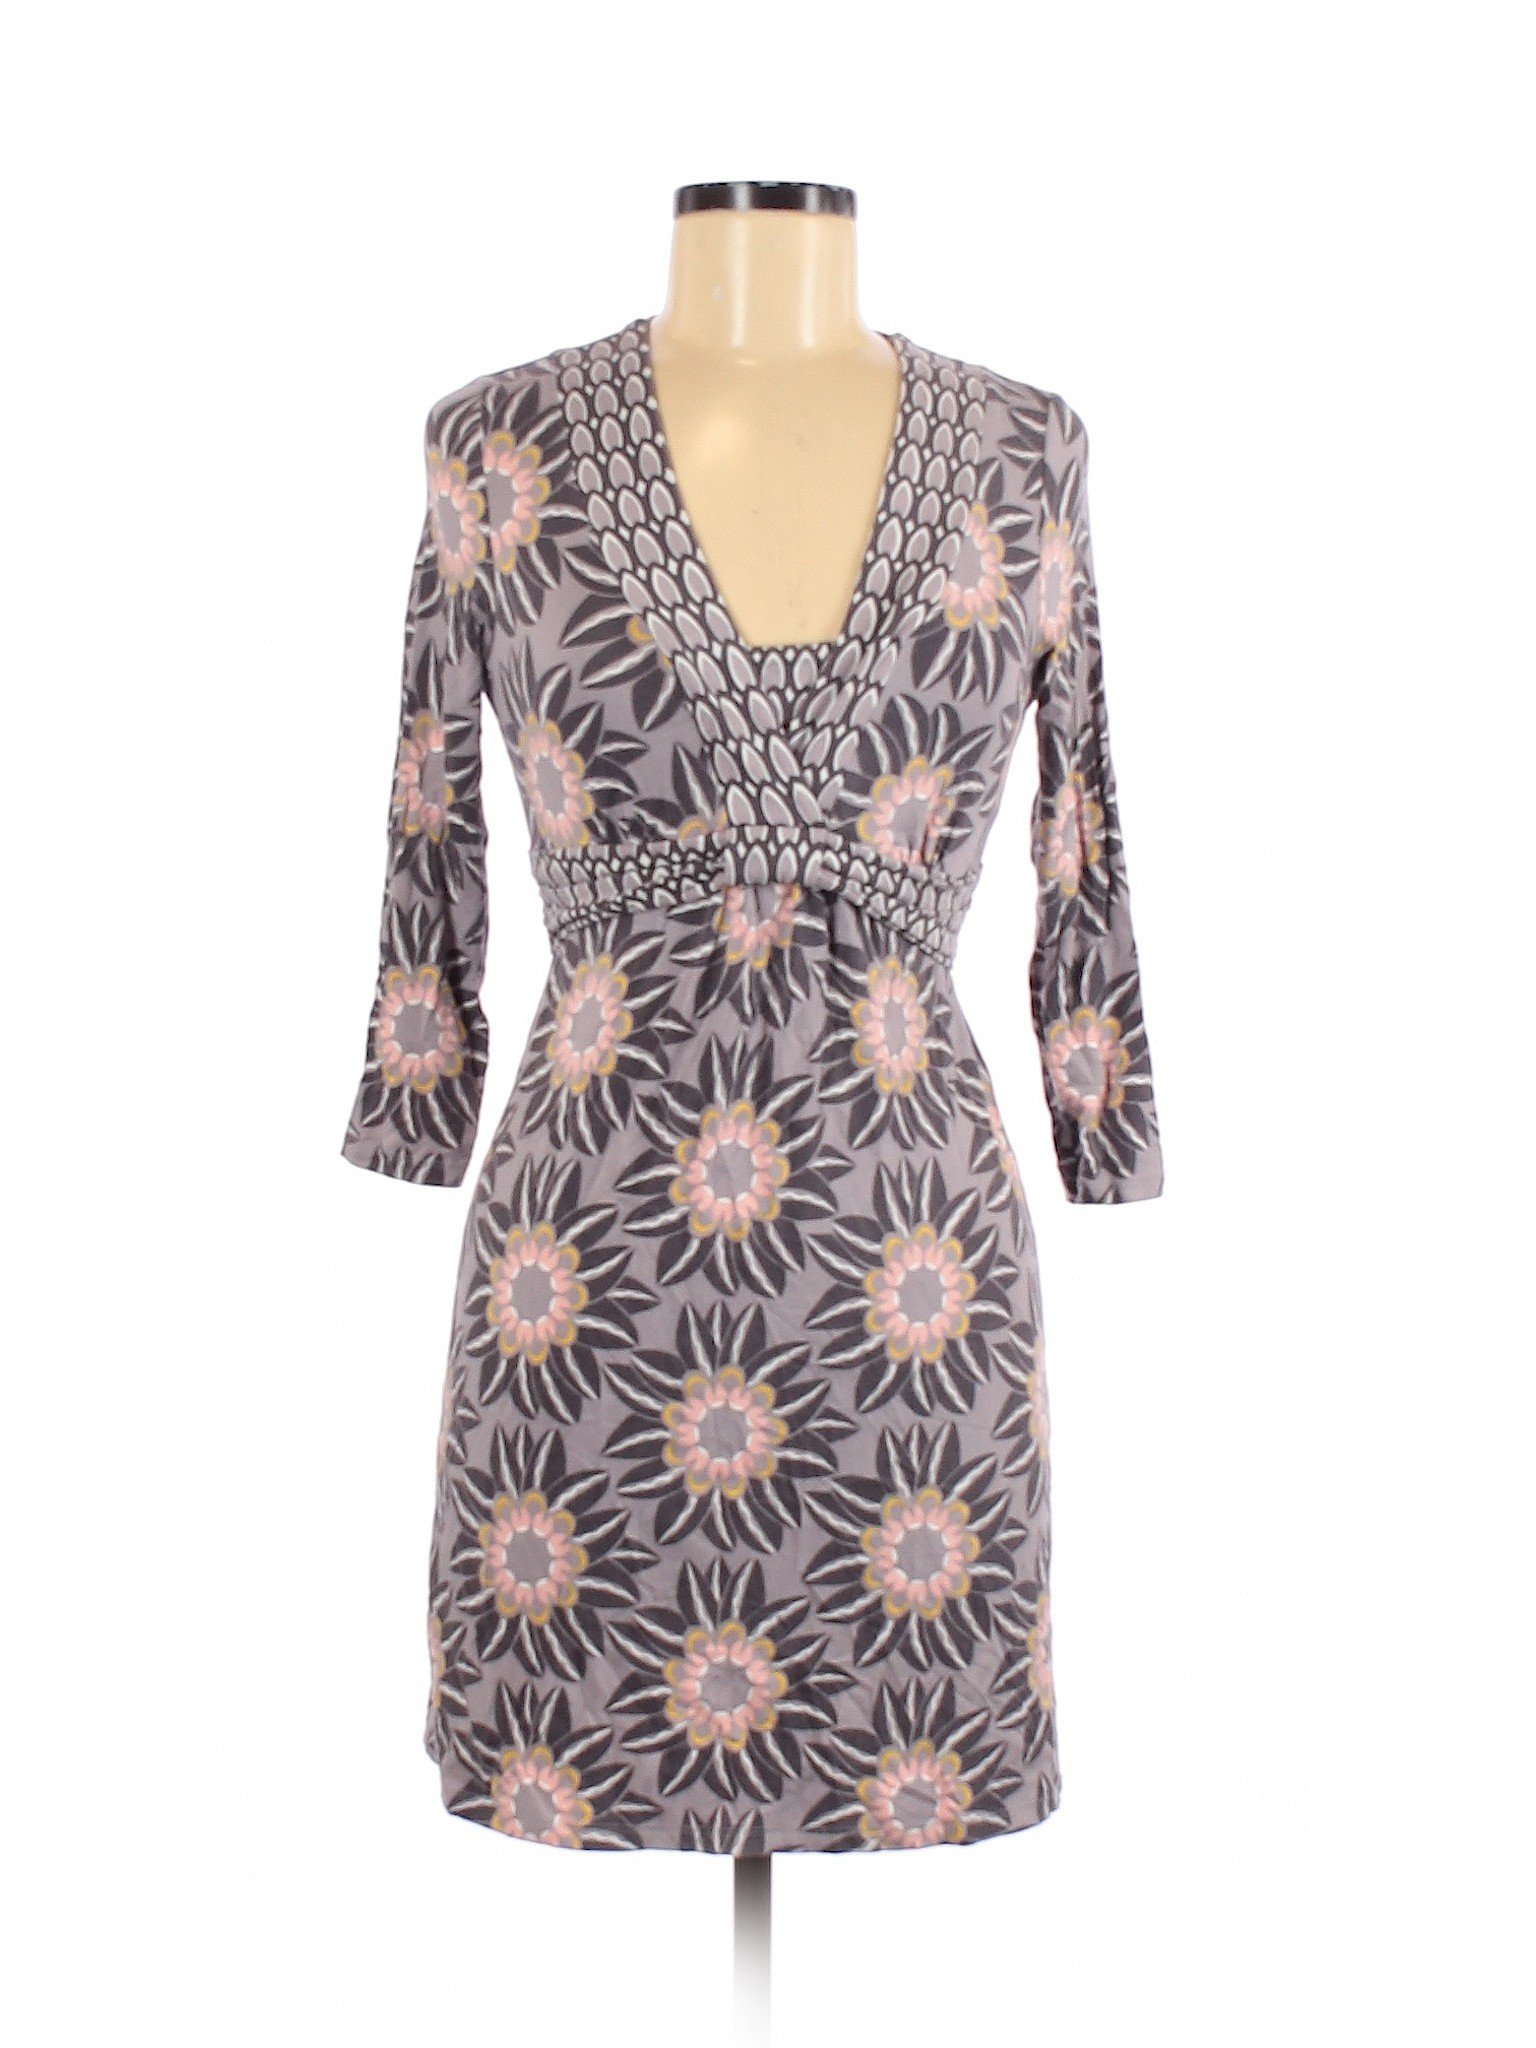 Boden Women Purple Casual Dress 6 | eBay